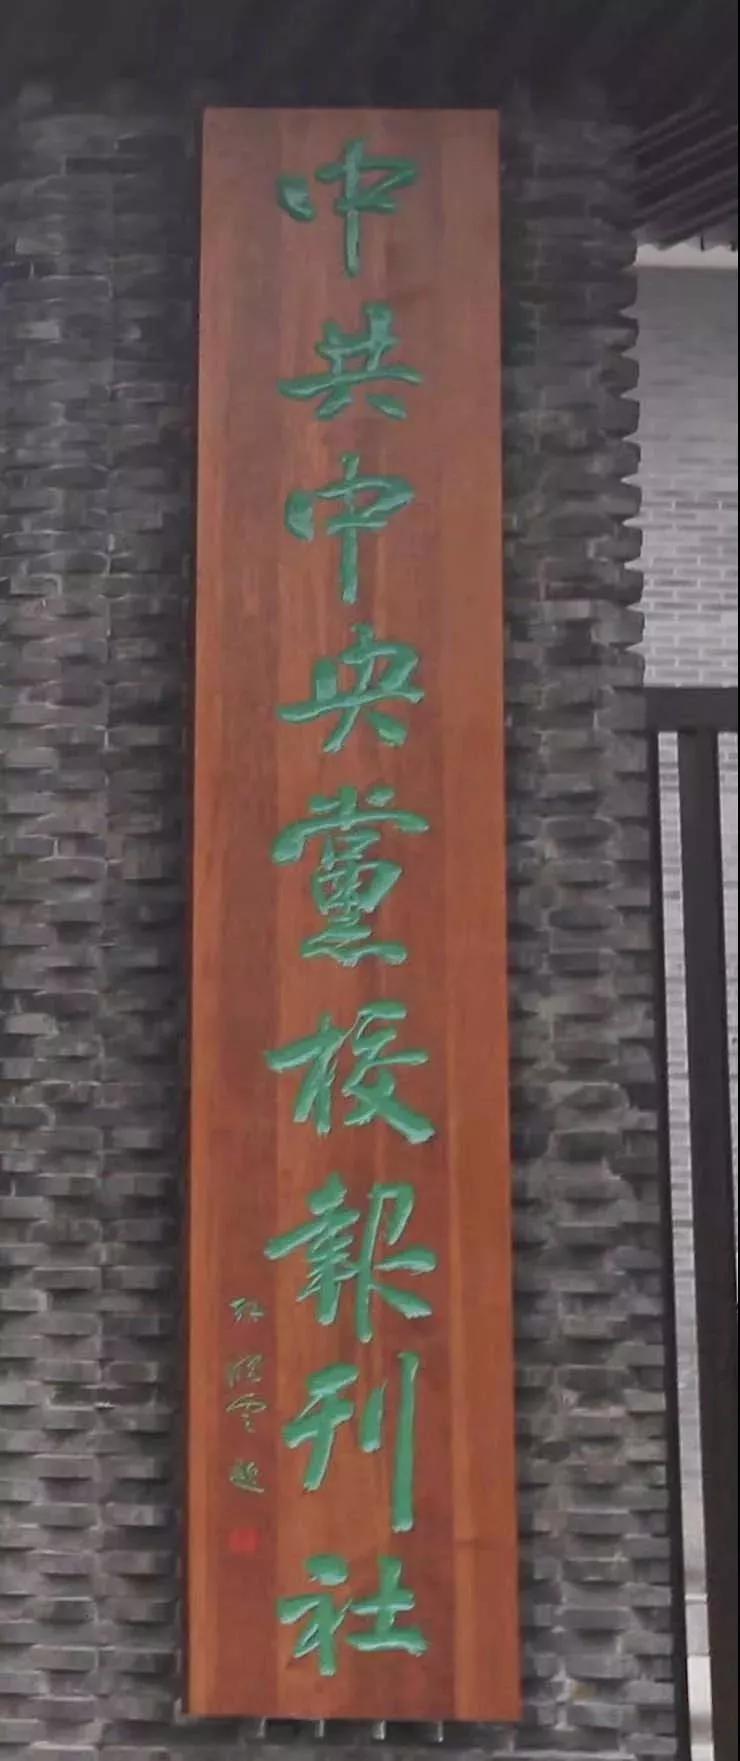 孙晓云为中央党校题写牌匾,中央高层重视书法,传统文化正在复兴!